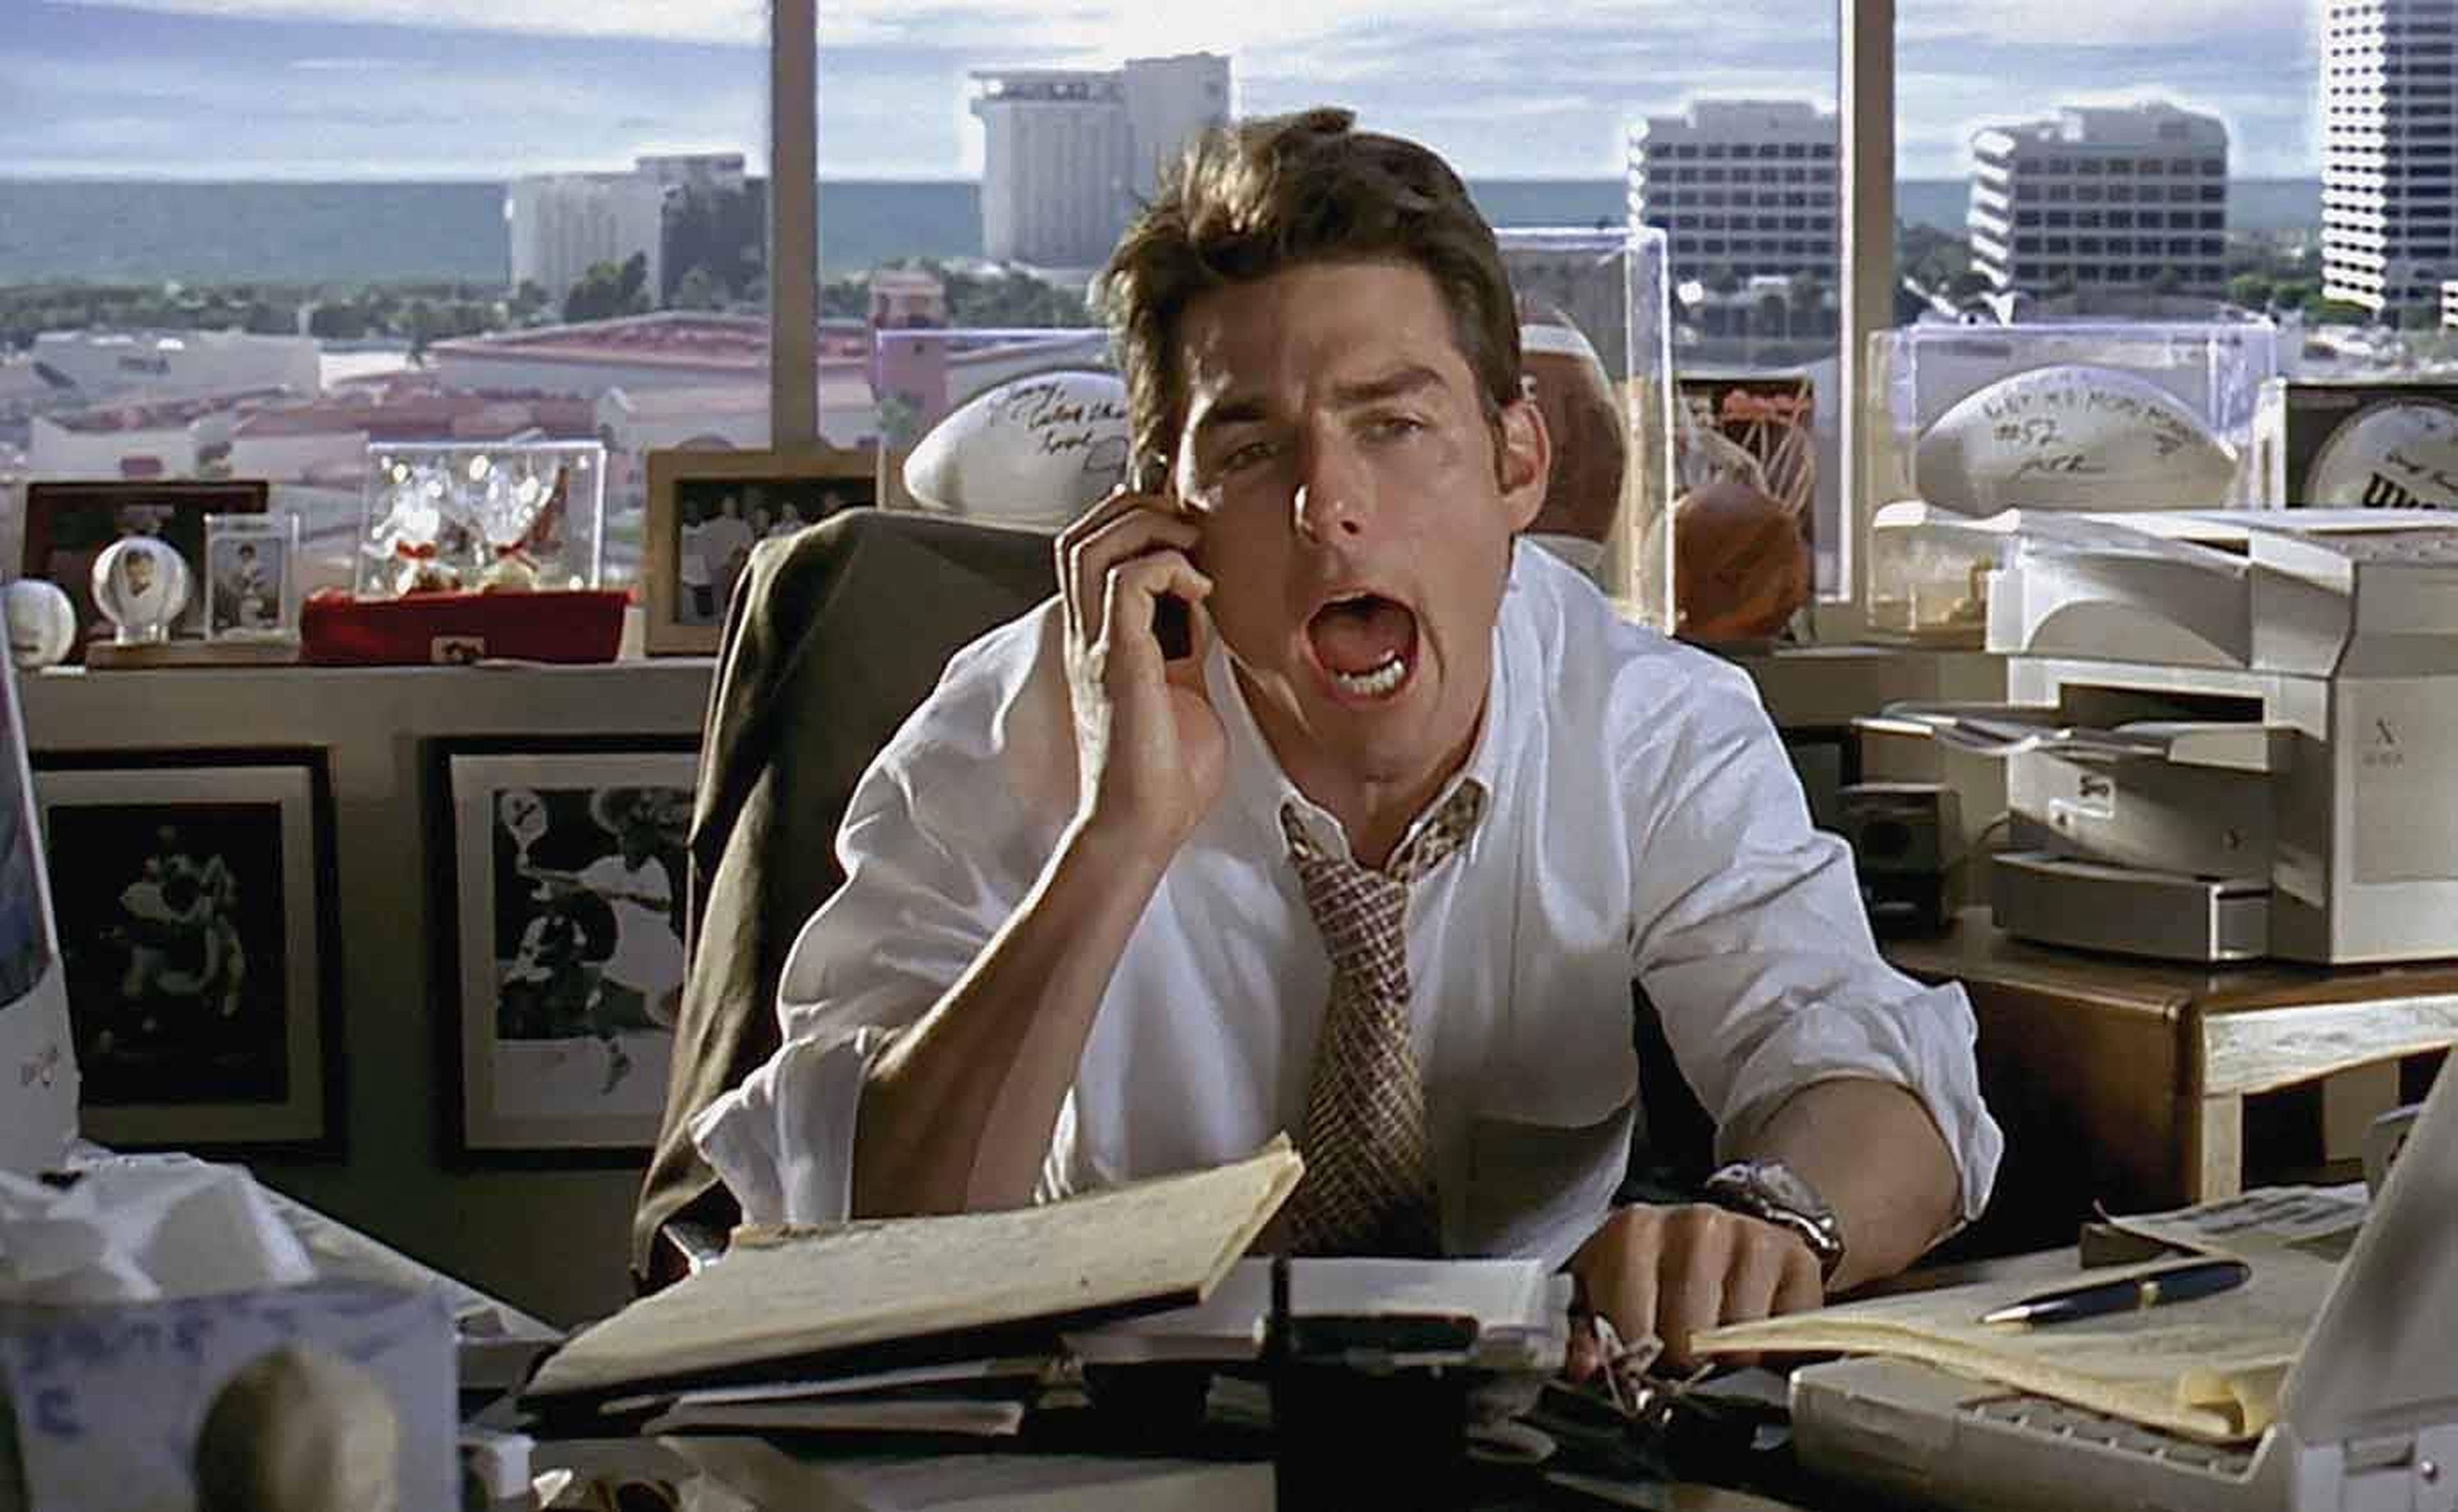 "Enséñame tus logros": te ordenaría Jerry Maguire si te entrevistara.